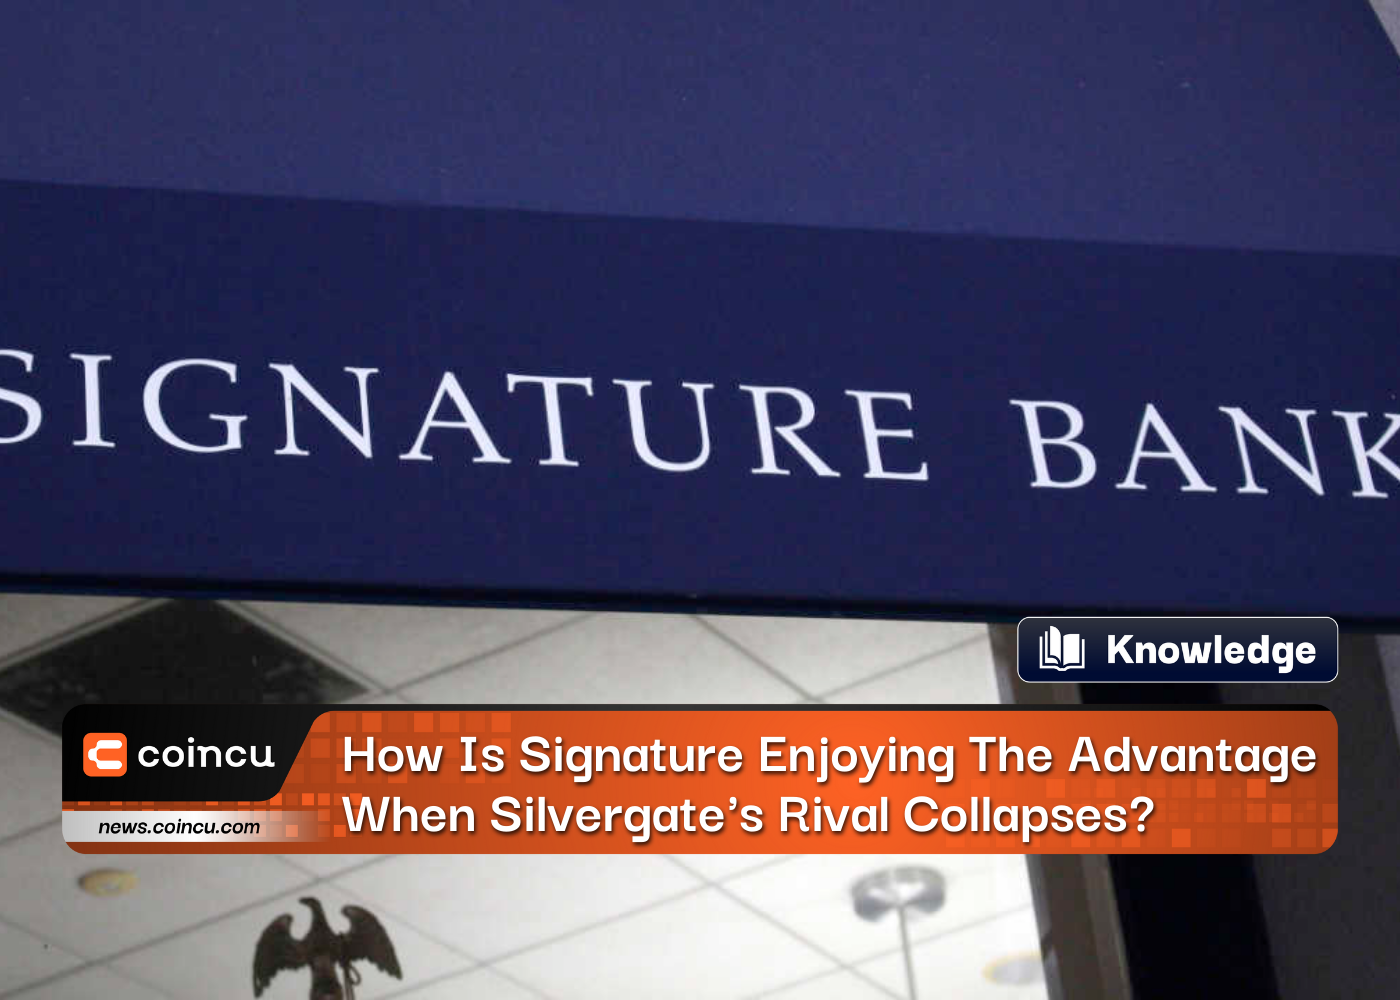 ¿Cómo disfruta Signature Bank de la ventaja cuando el rival de Silvergate colapsa?